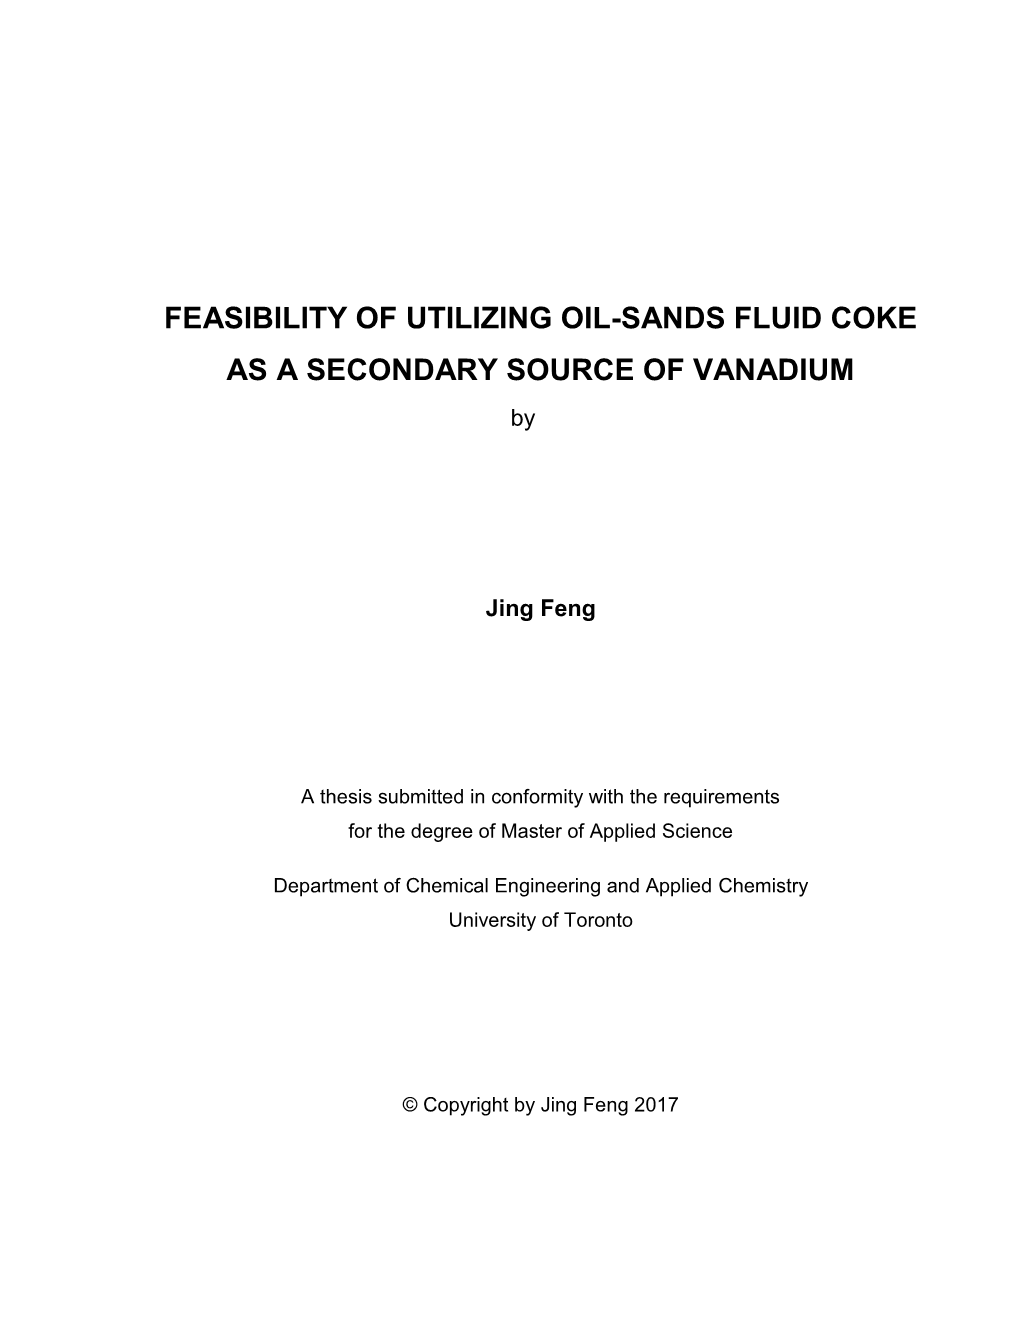 Feasiblity of Utilzing Oil-Sands Fluid Coke As a Secondary Source Of